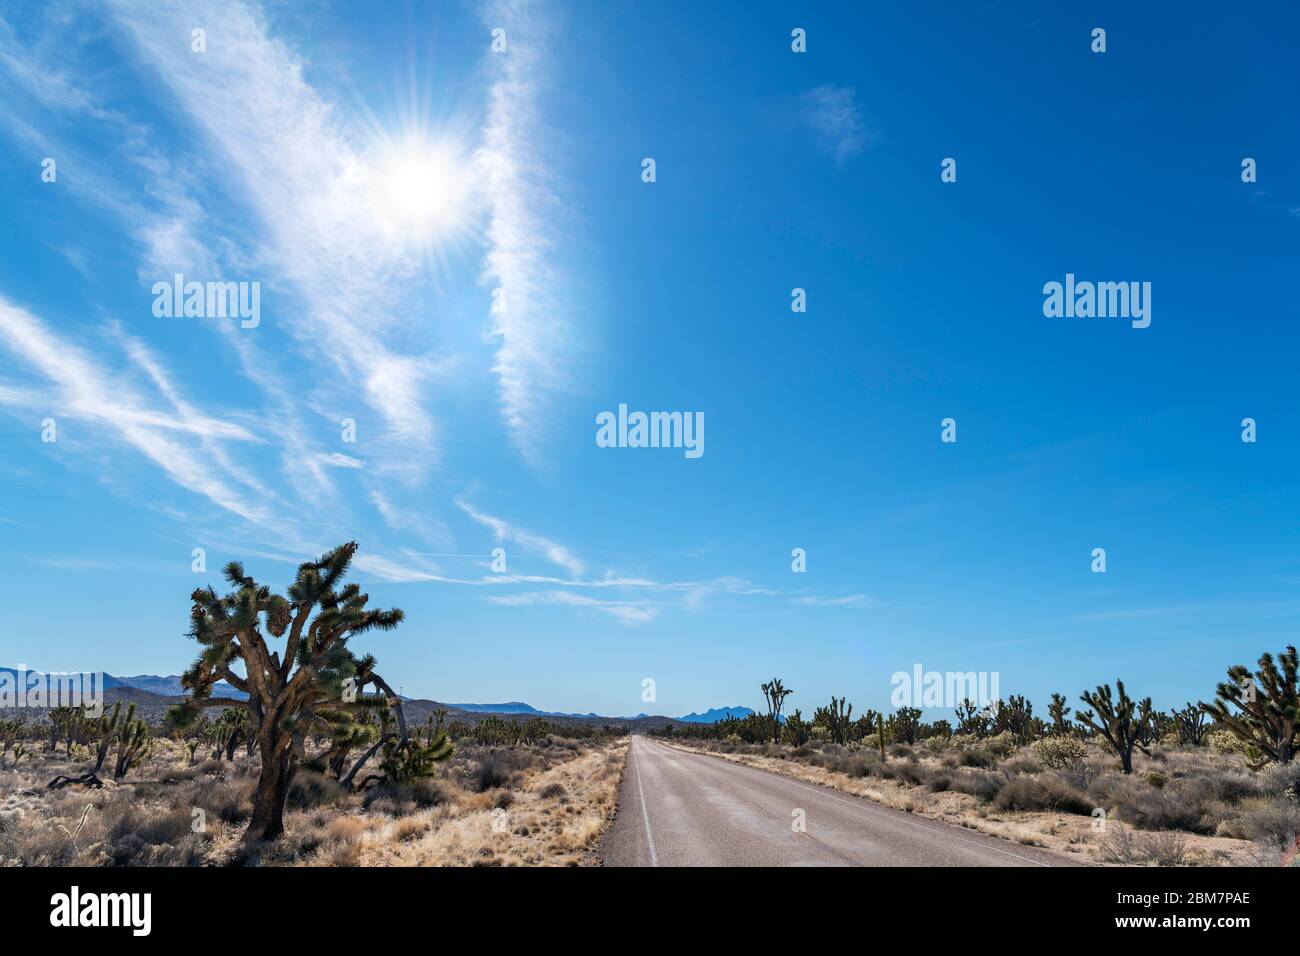 Morning Star Mine Rd dans la réserve nationale de Mojave, désert de Mojave, Californie, États-Unis Banque D'Images